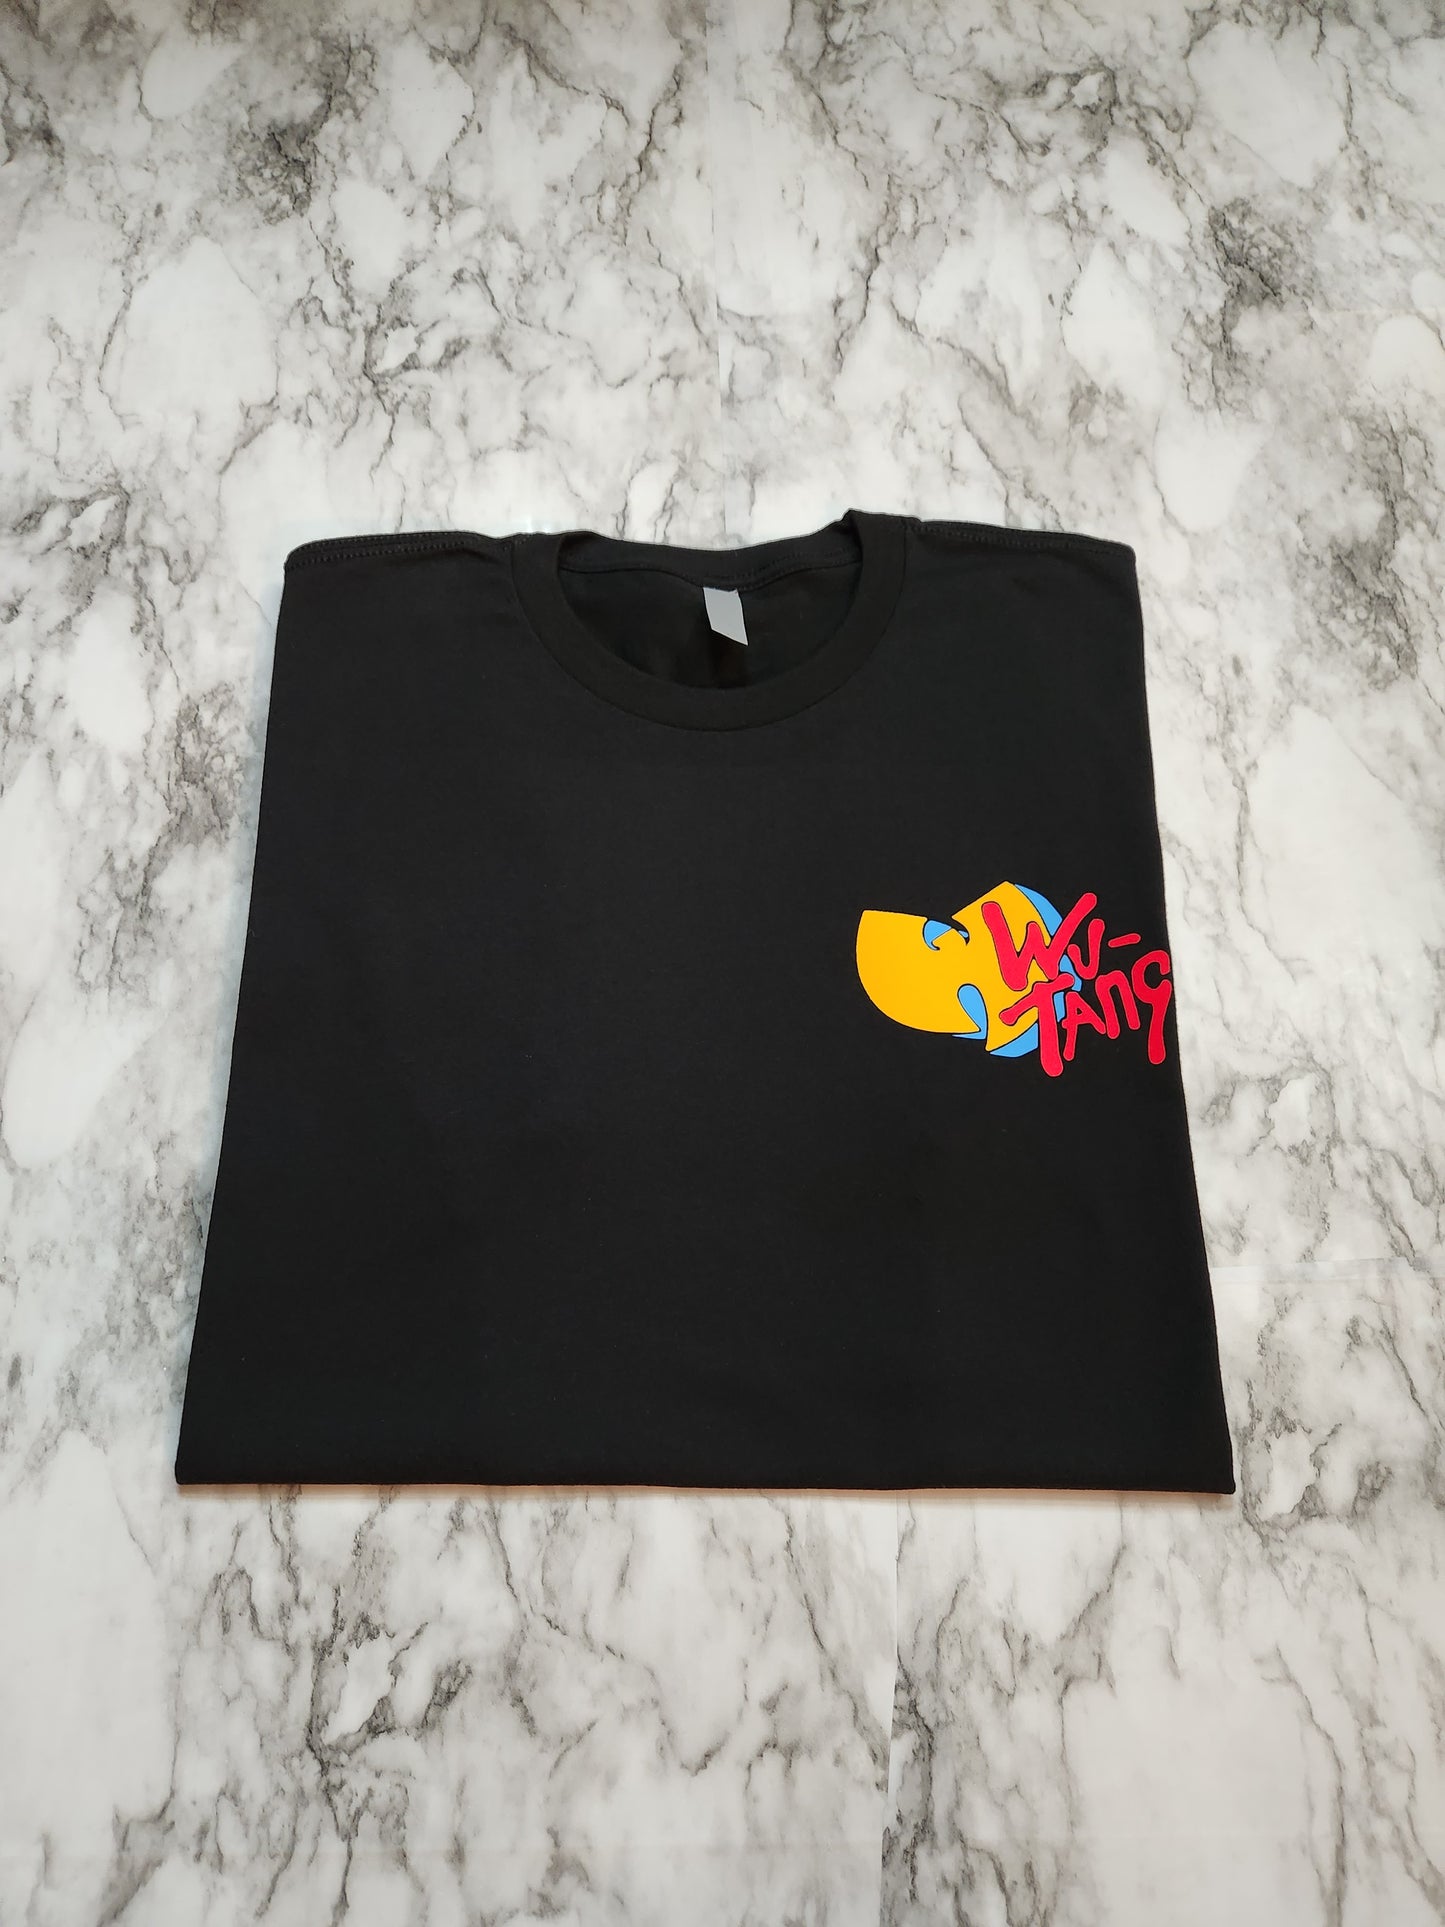 WuTV T-Shirt (Alternate) - Centre Ave Clothing Co.